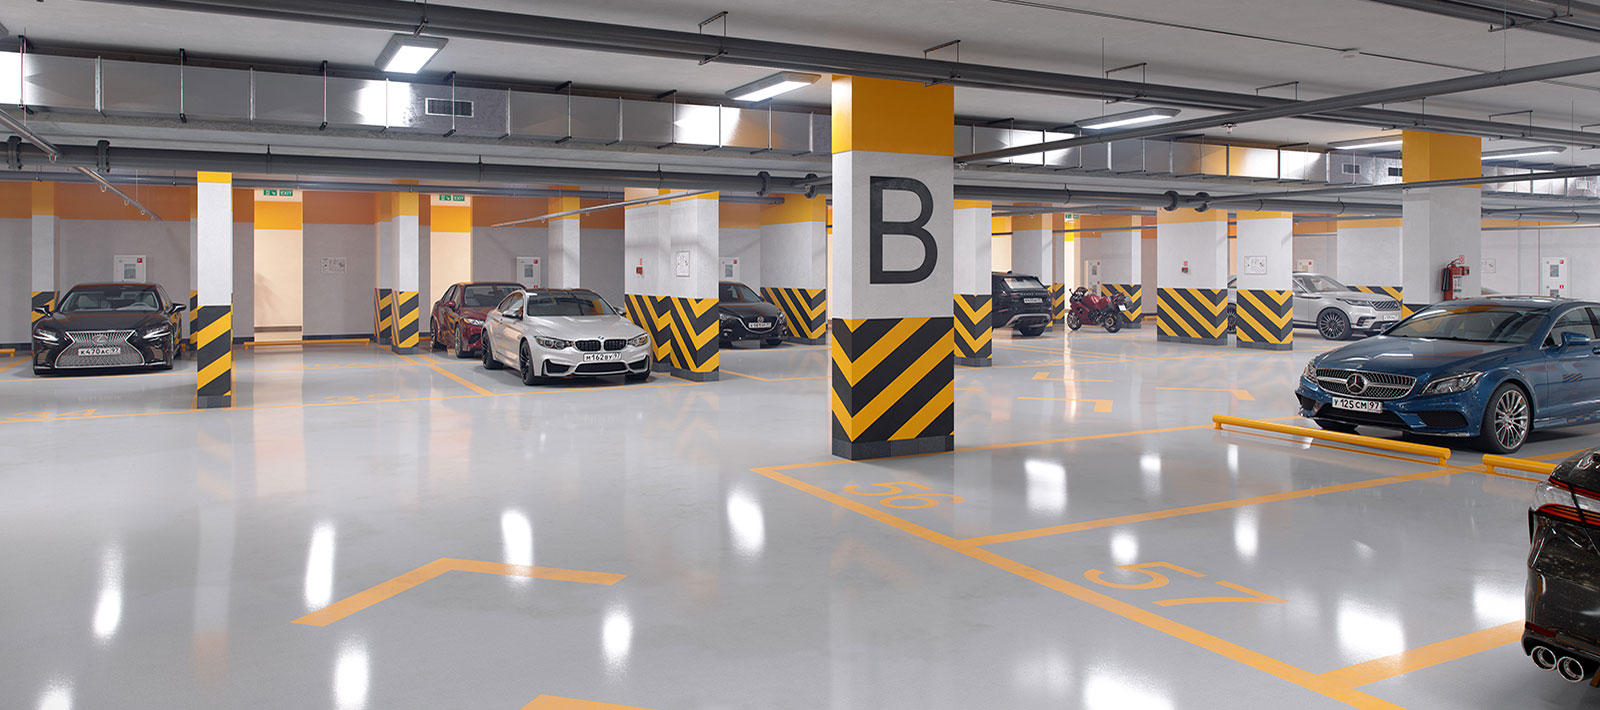 Способы повышения безопасности на паркинге благодаря покрытию  на полу